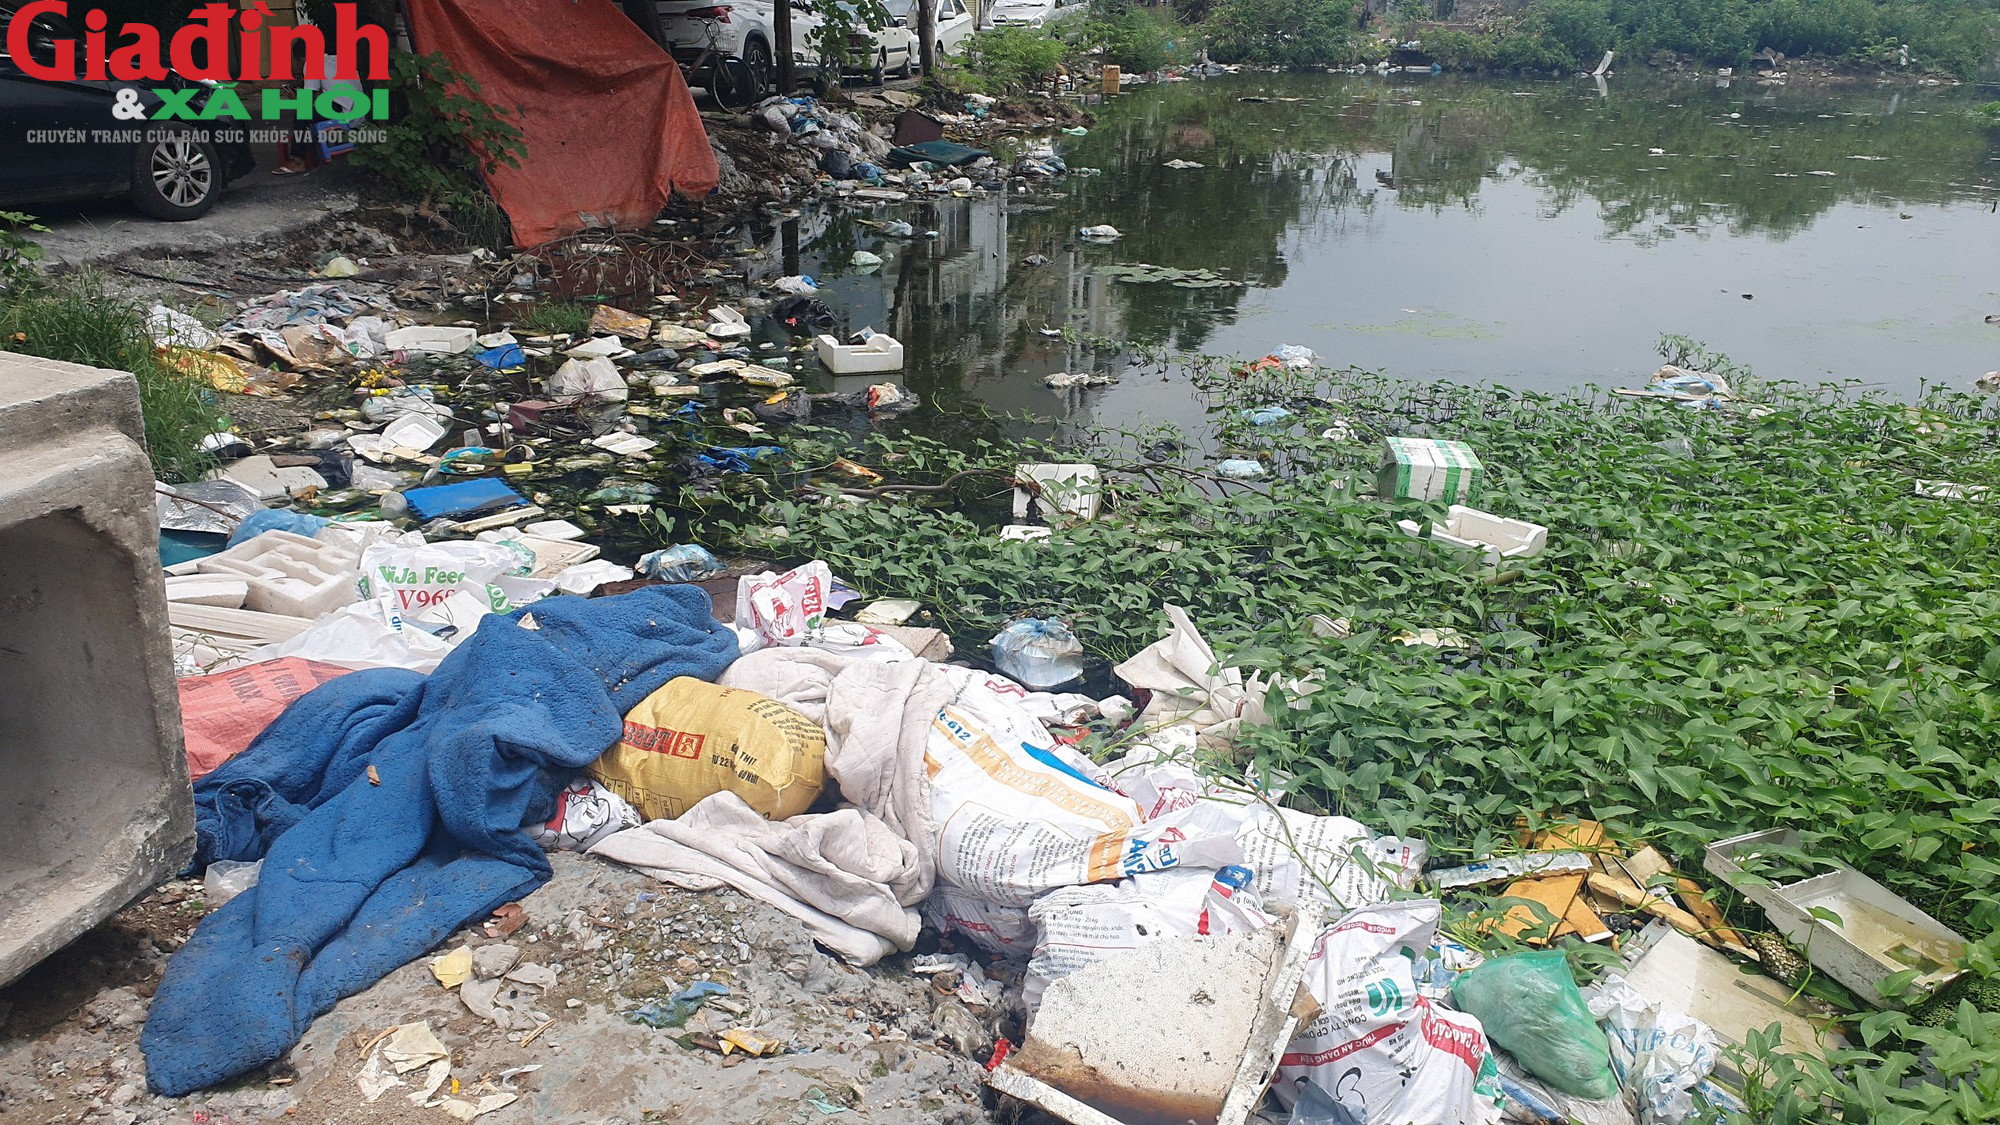 Nhiều hồ ở Hà Nội xuất hiện rác thải, xác cá chết trôi nổi gây ô nhiễm môi trường - Ảnh 14.